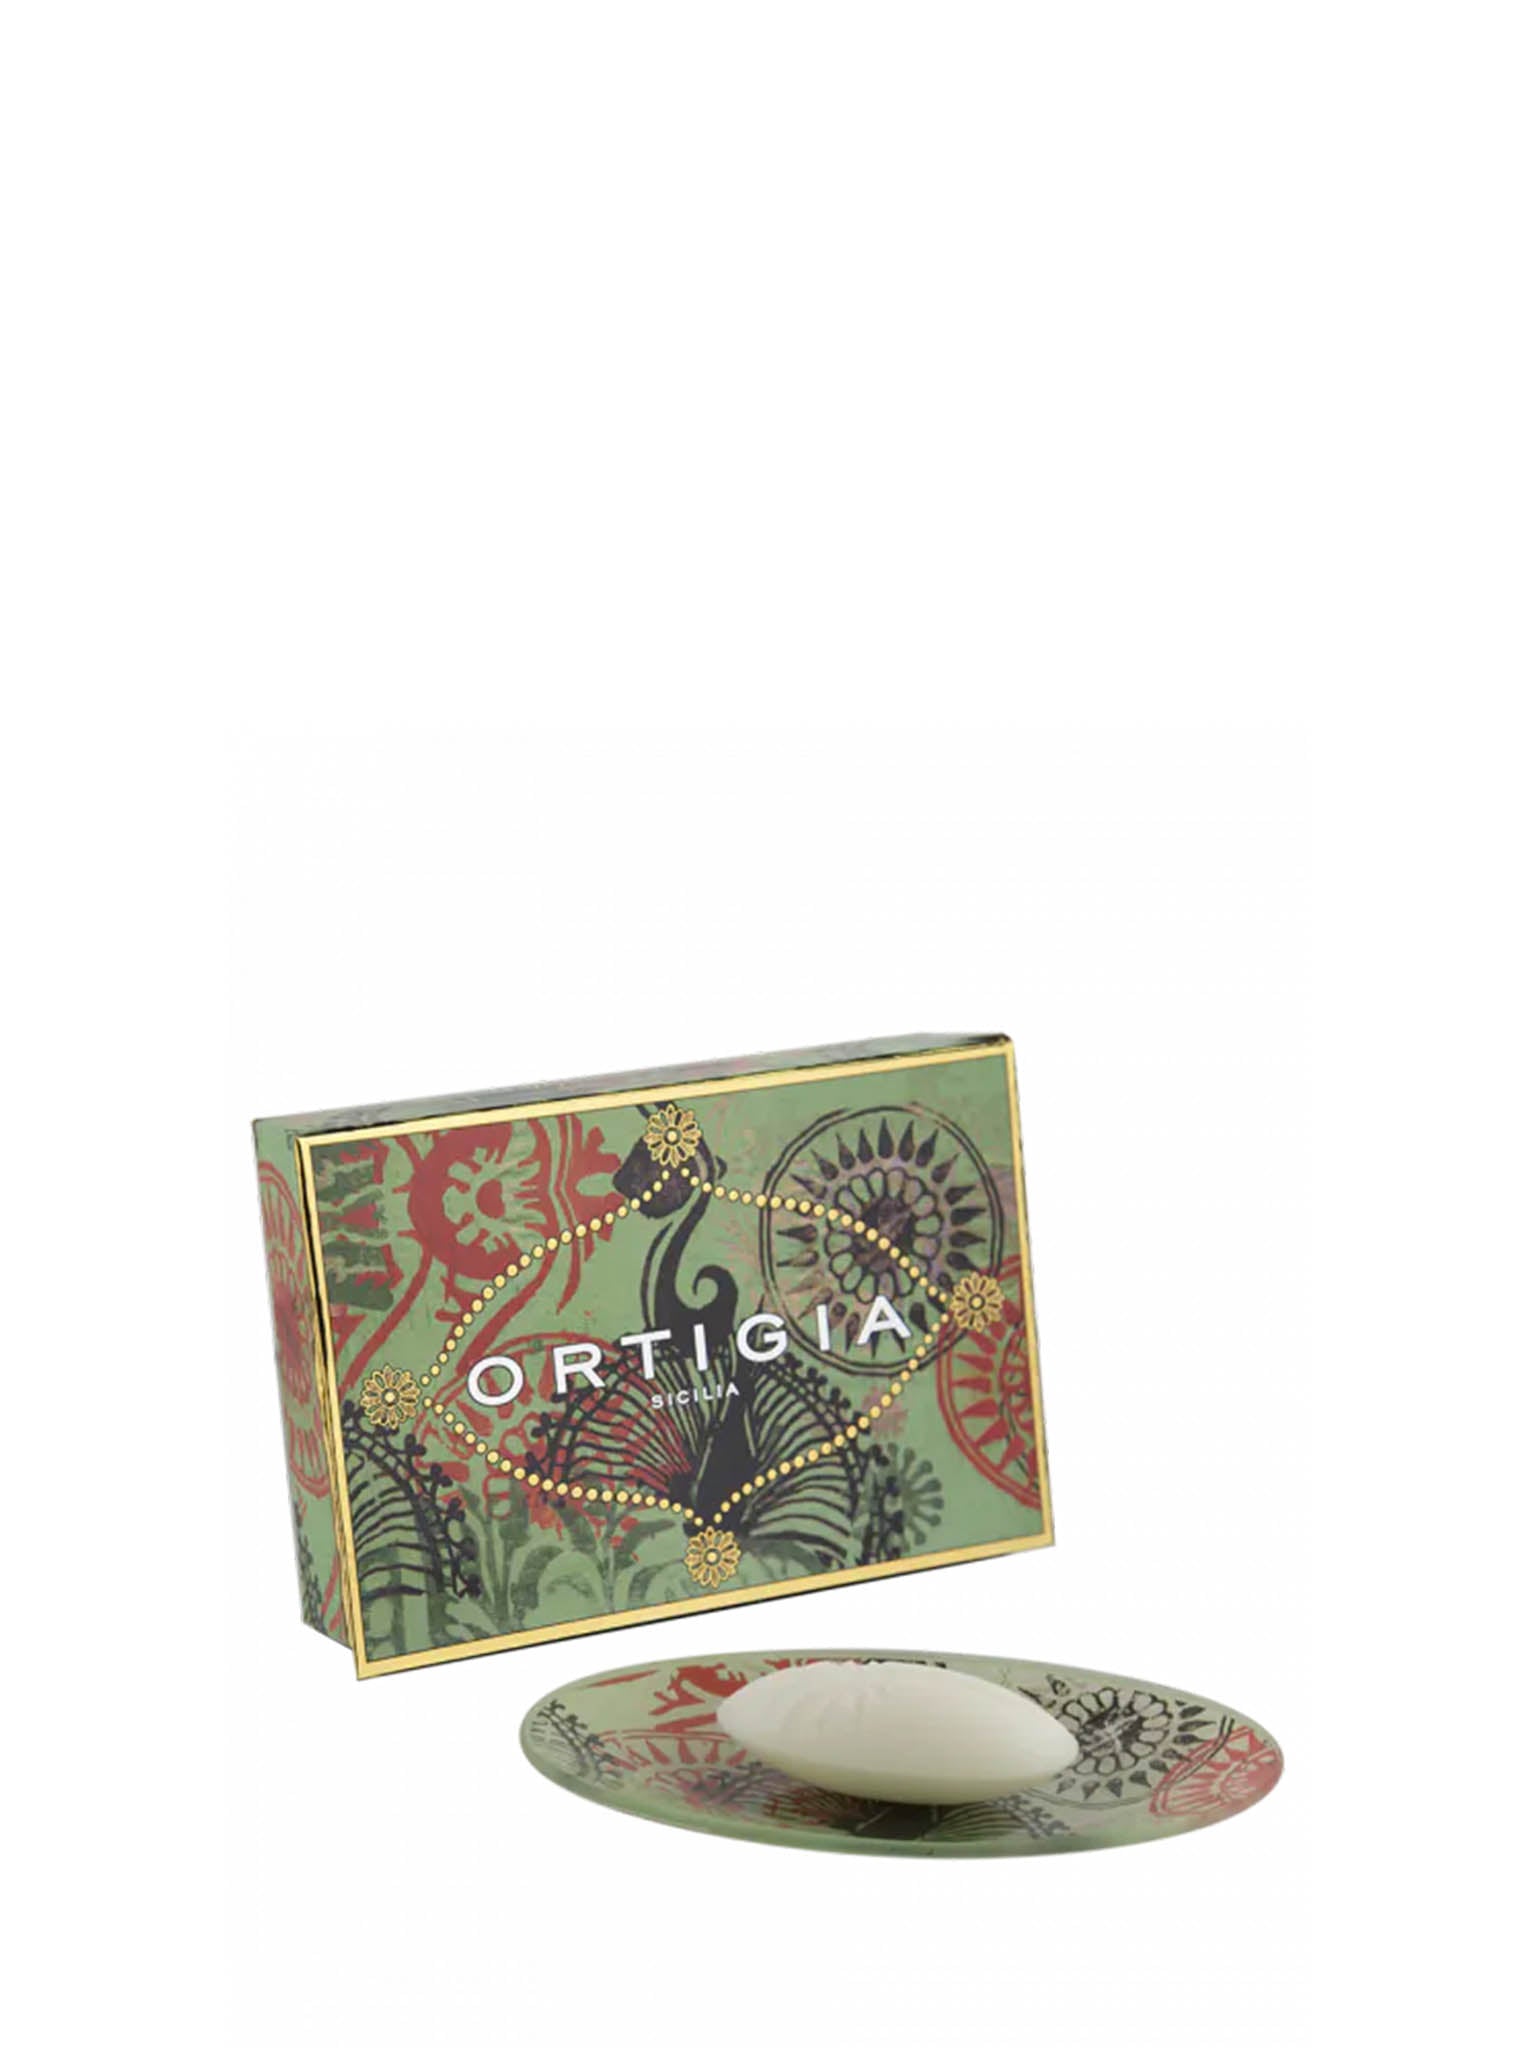 Ortigia Fico D_India Soap  with Glass Soap Dish Cutout